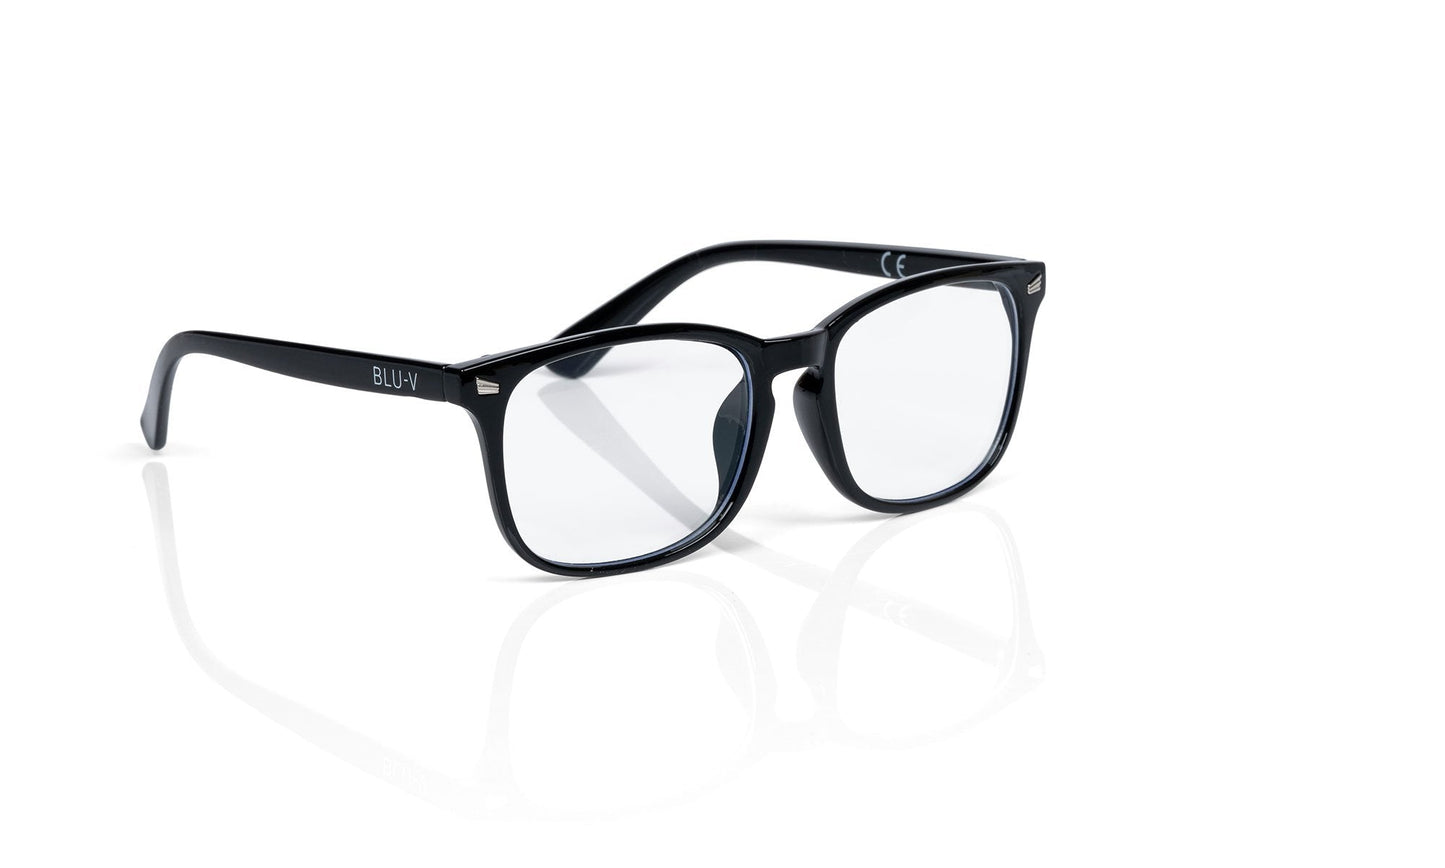 Blu-V Specs Blue Light Blocking Glasses